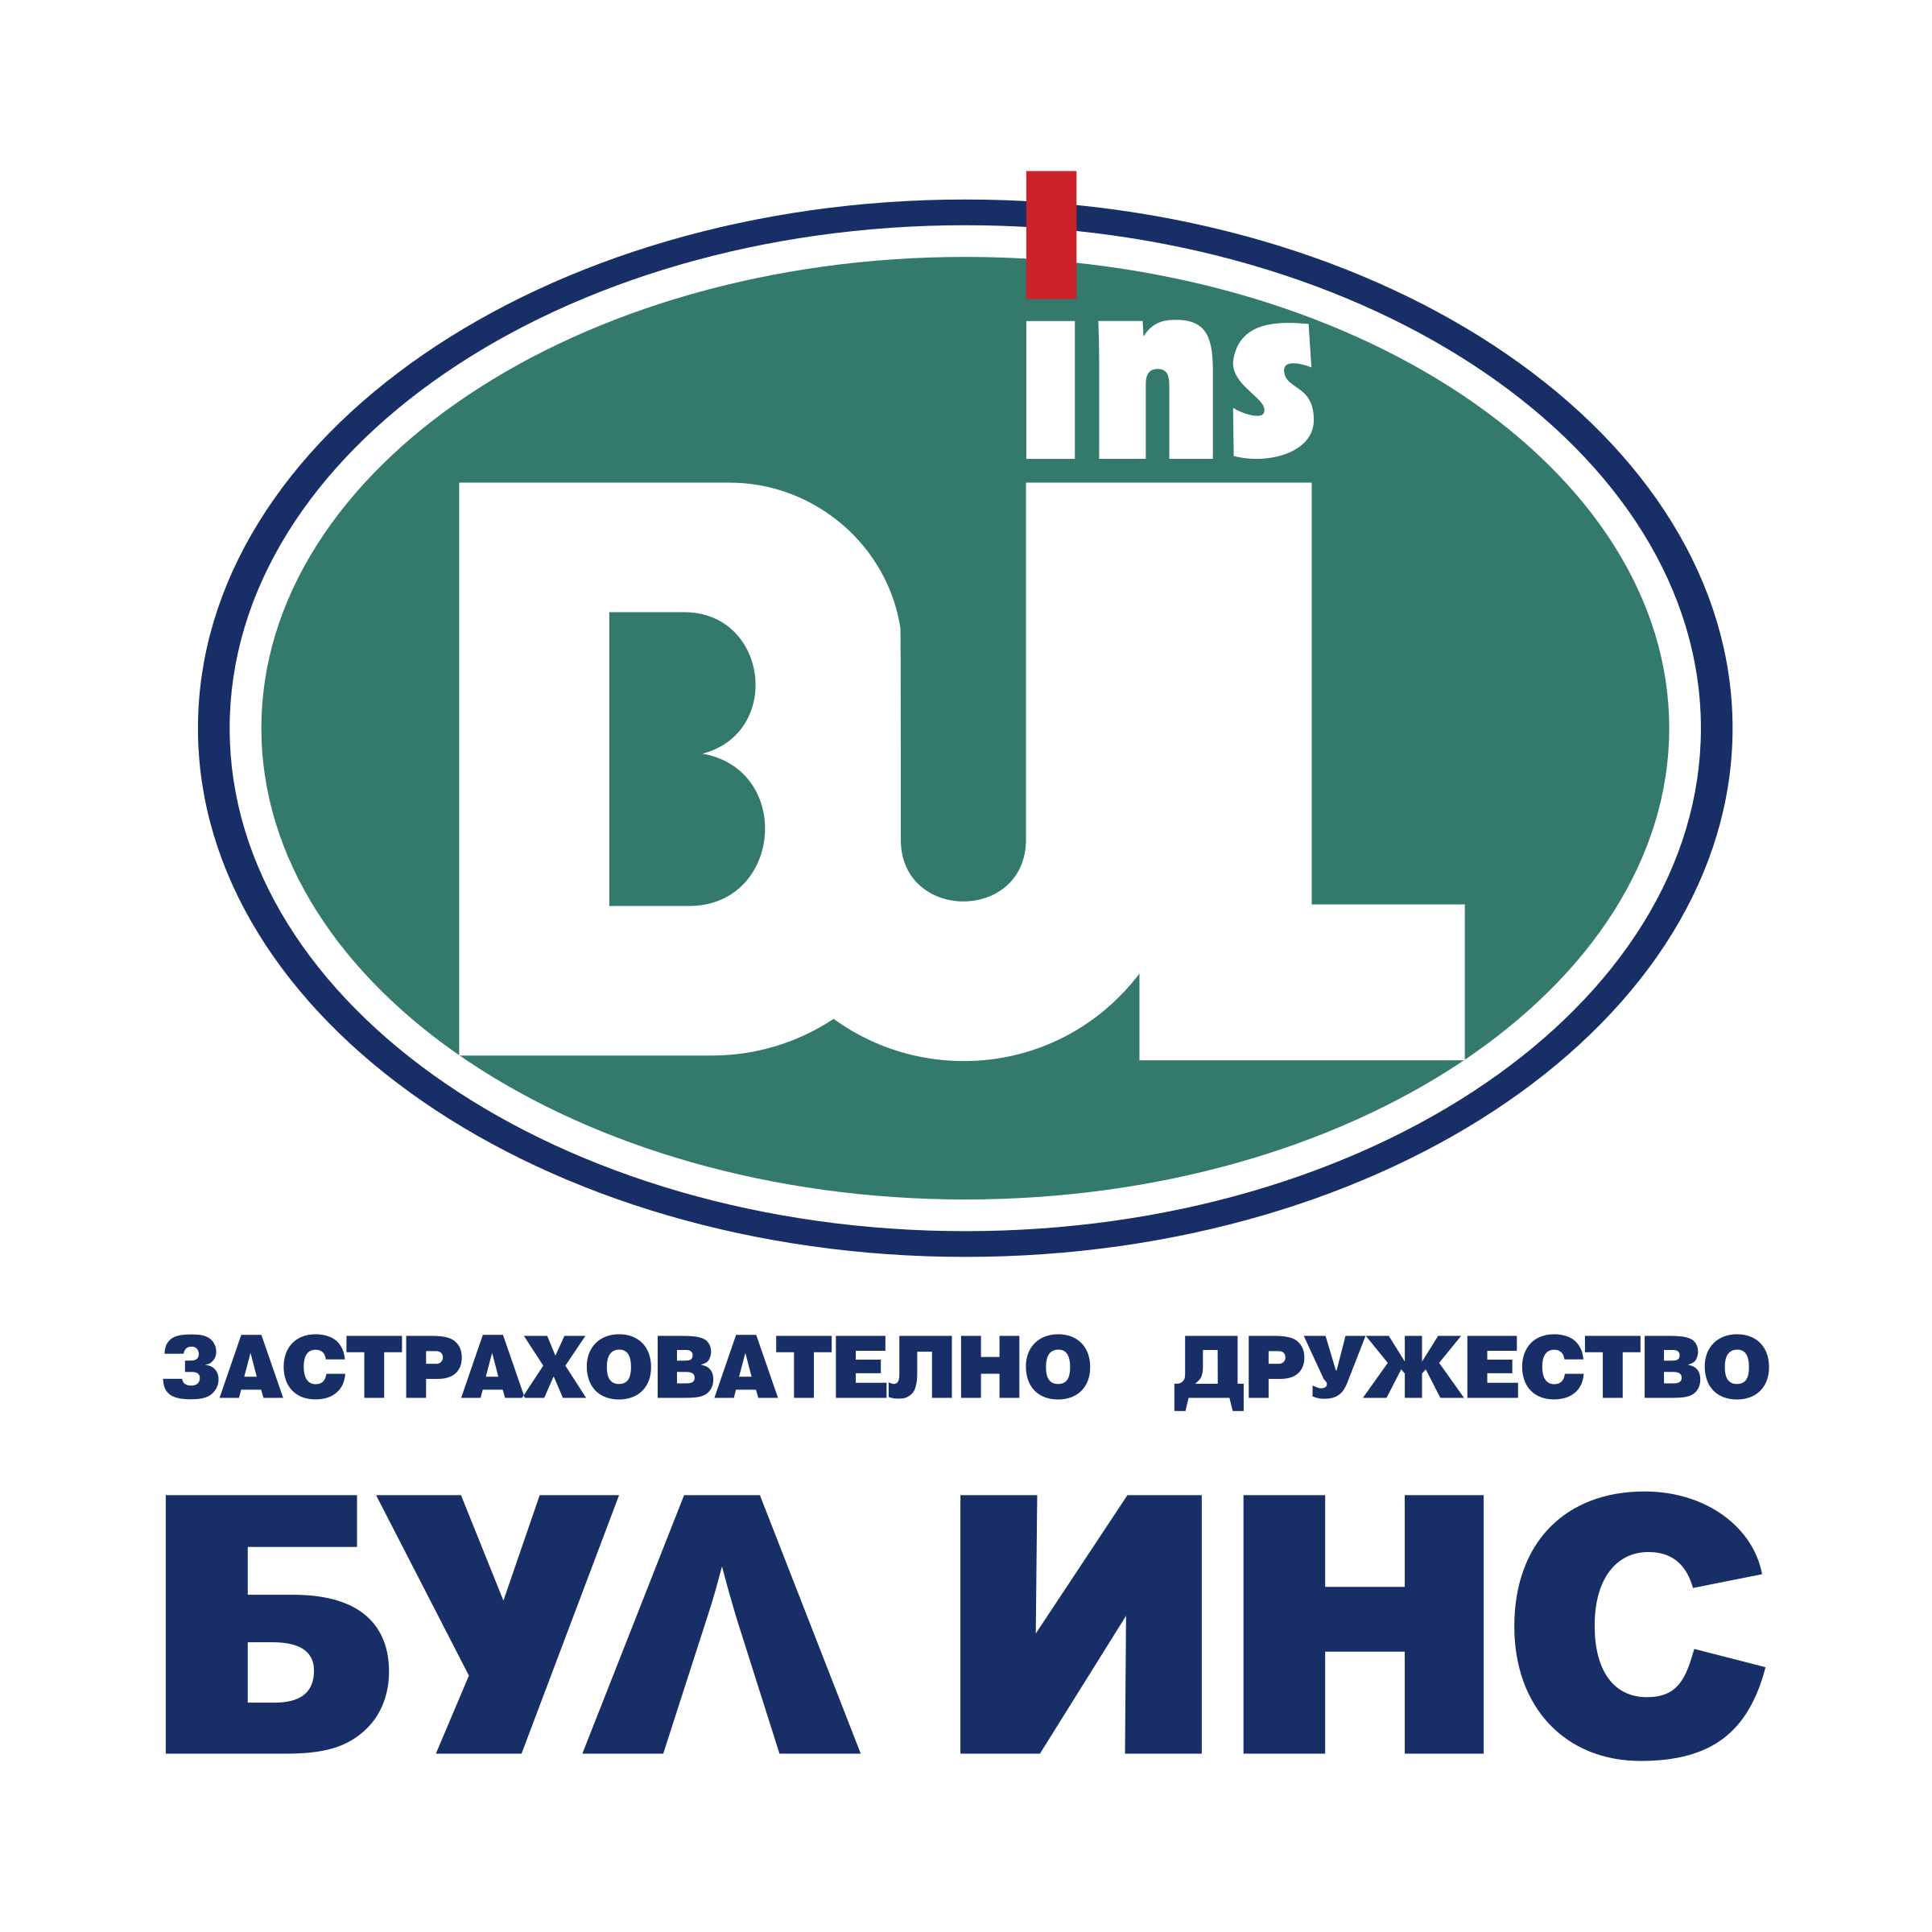 Bul Logo - Bul Ins Logo PNG Transparent & SVG Vector